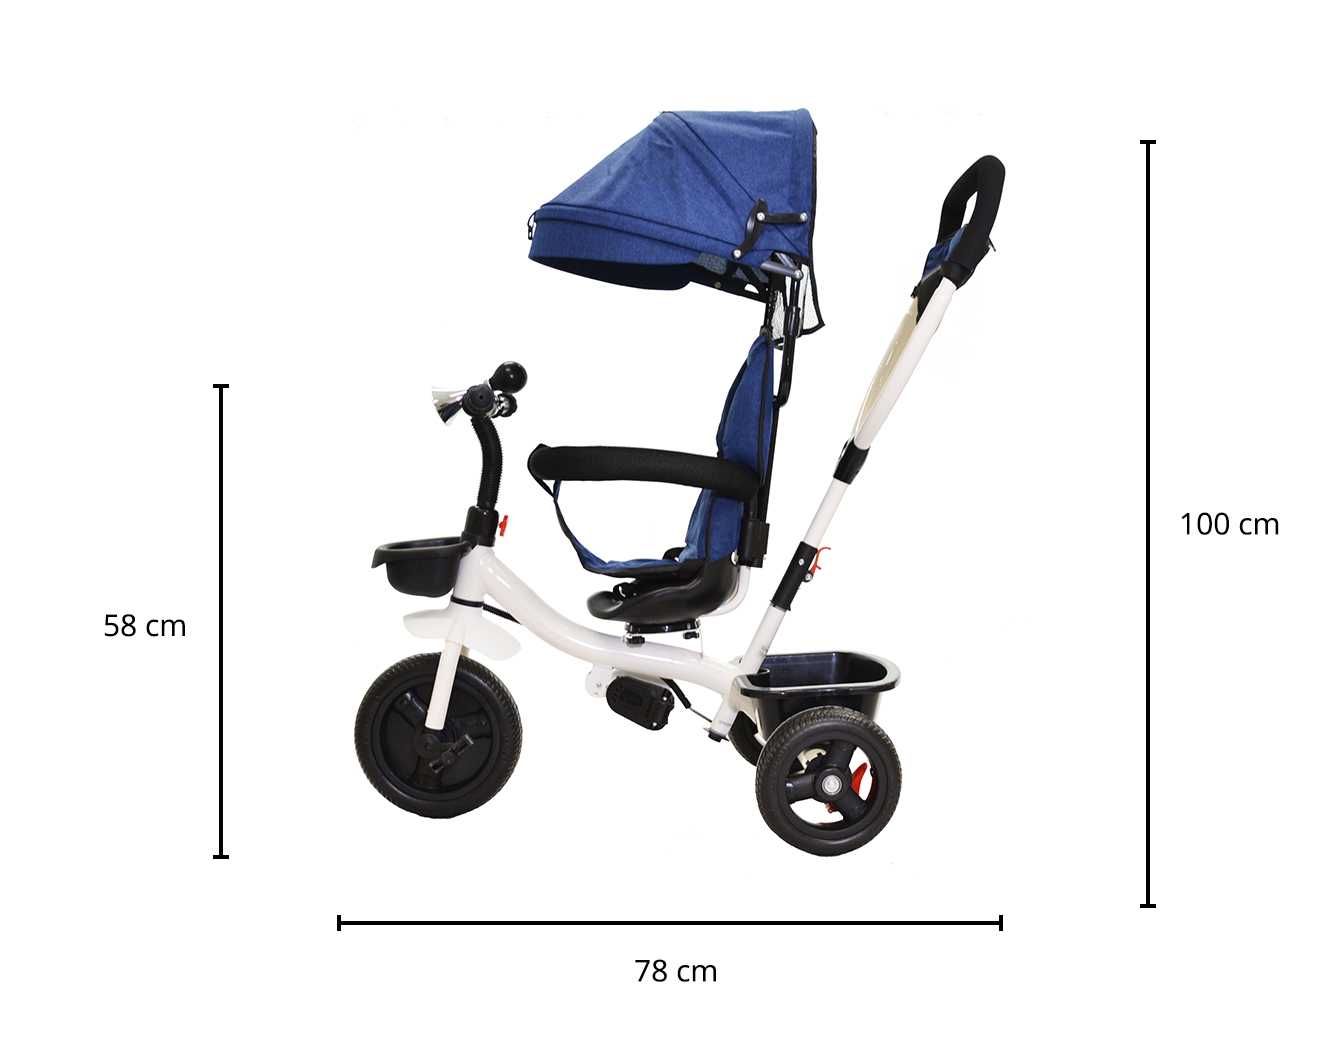 Rowerek trójkołowy dla dzieci spacerówka obrotowy niebieski